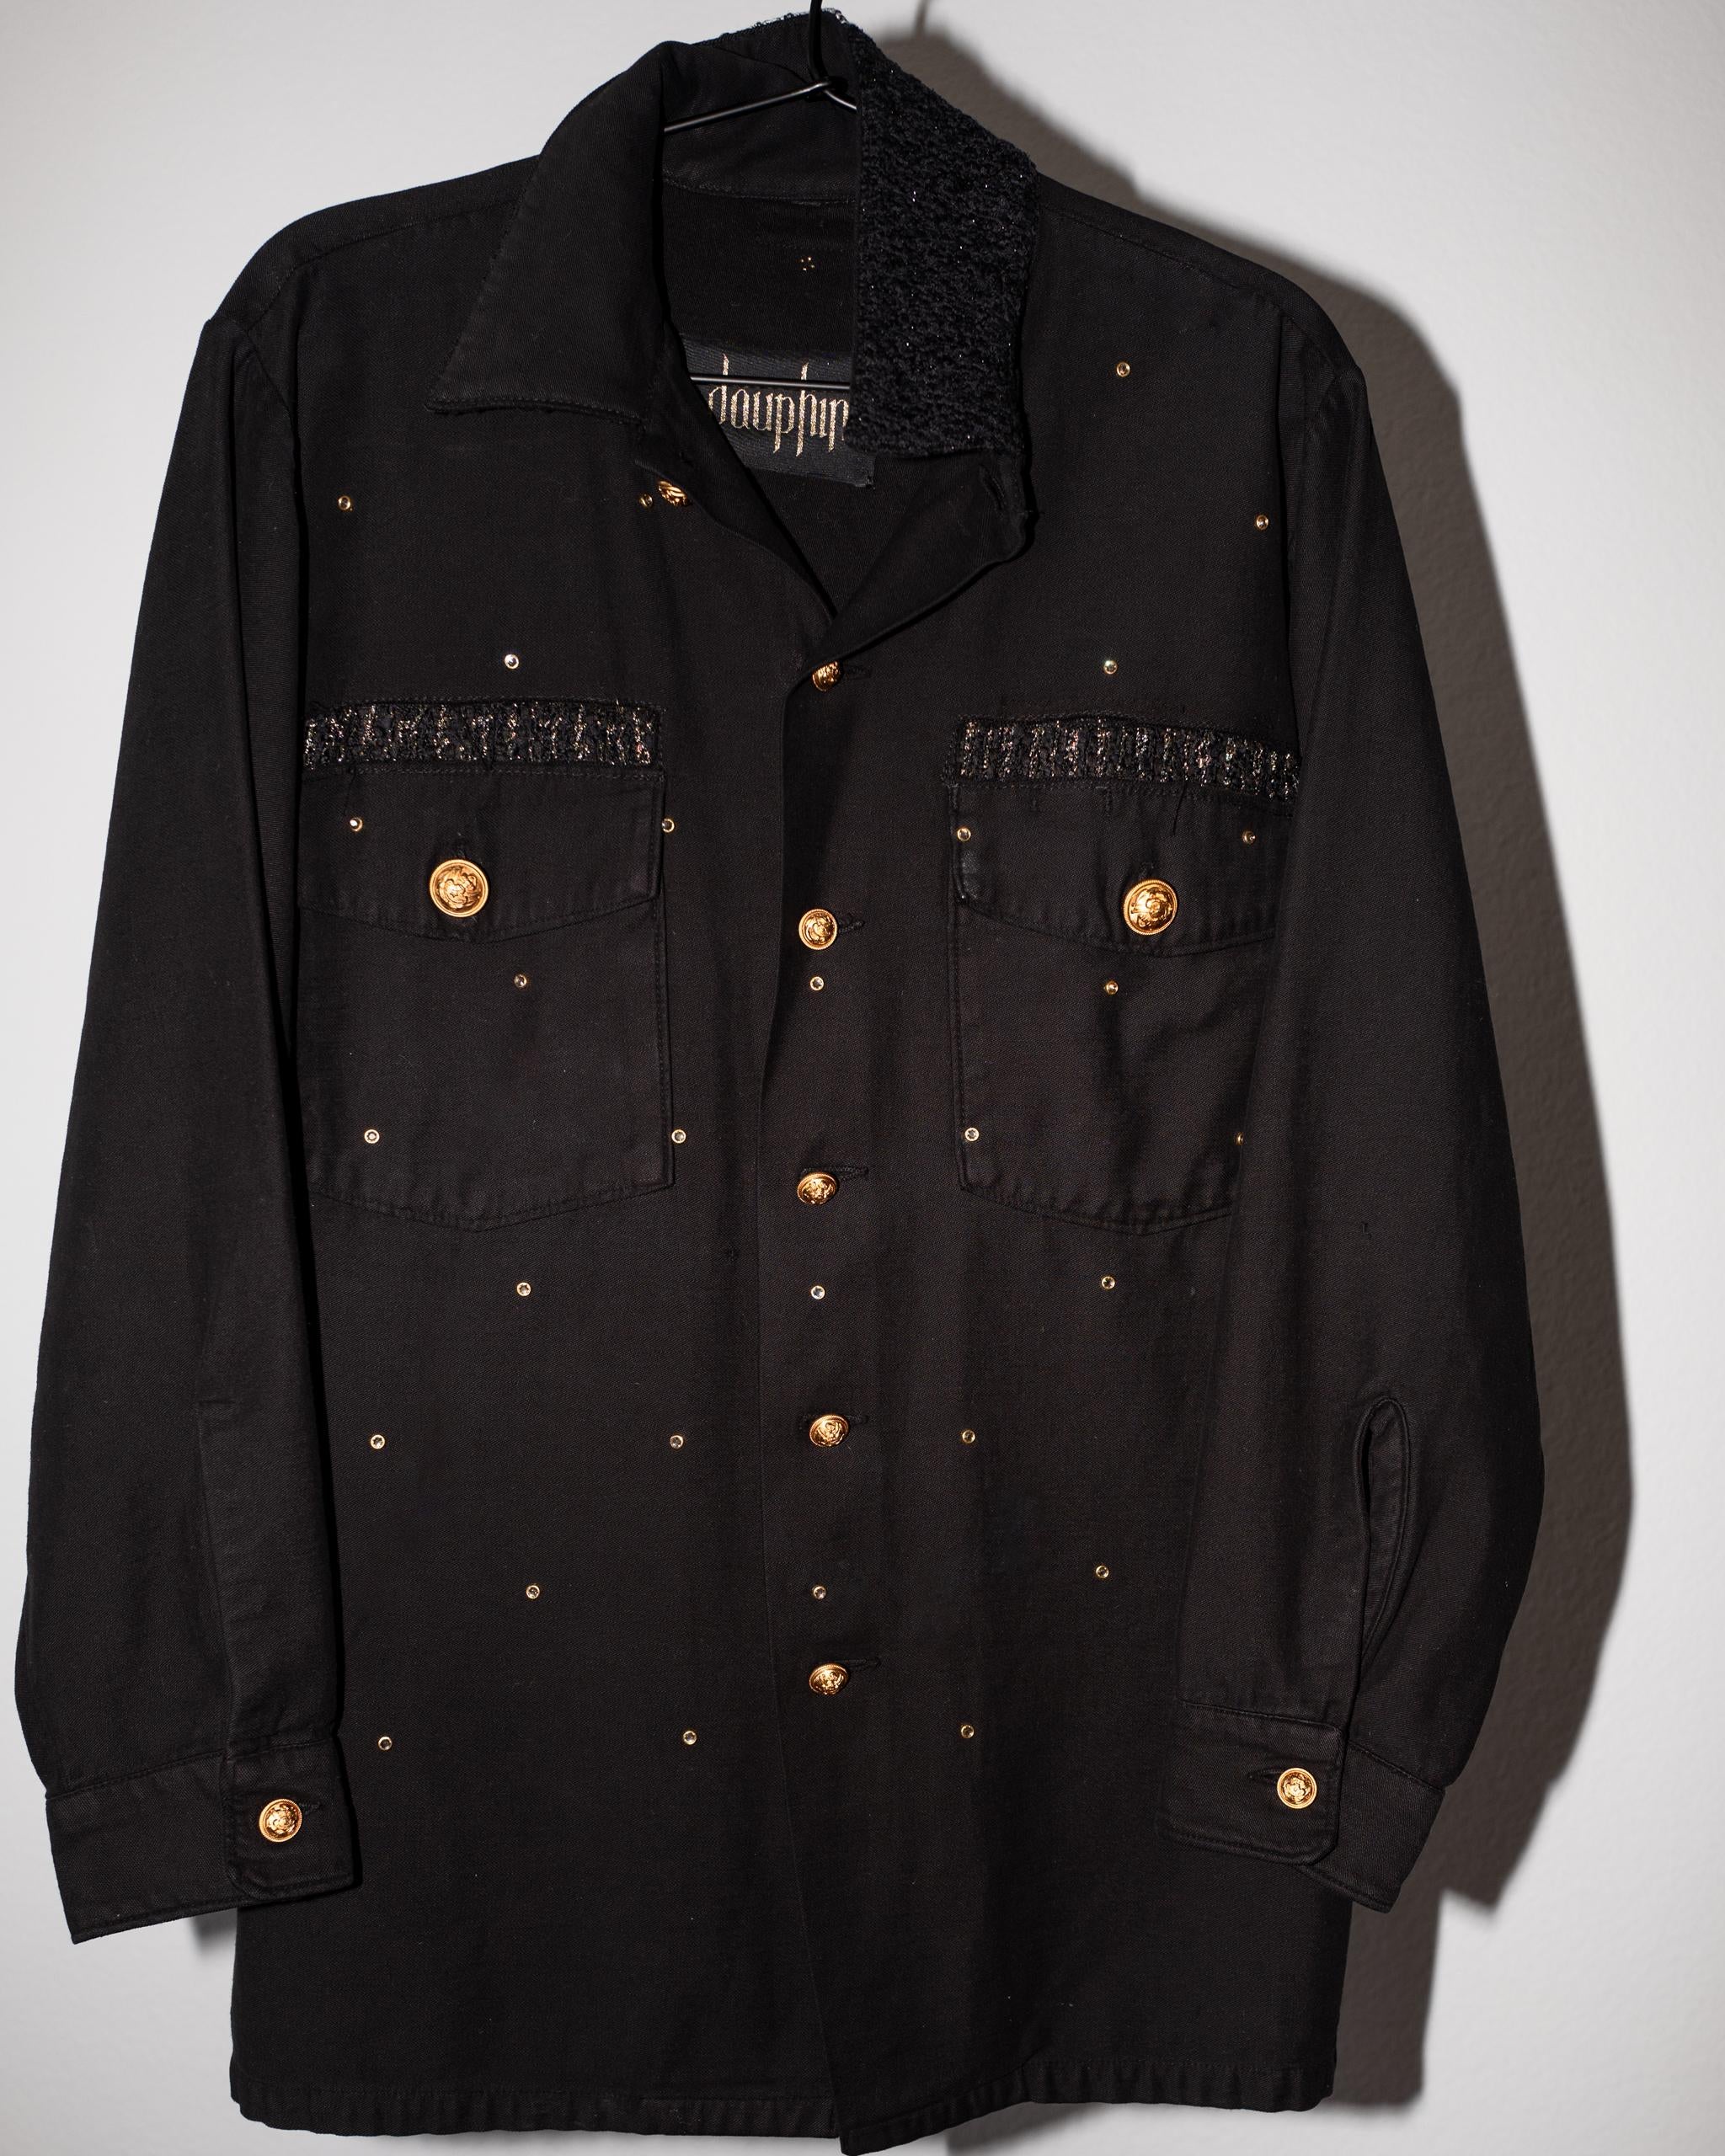 Women's Swarovski Crystal Embellished Jacket Black Cotton Vintage Military J Dauphin 